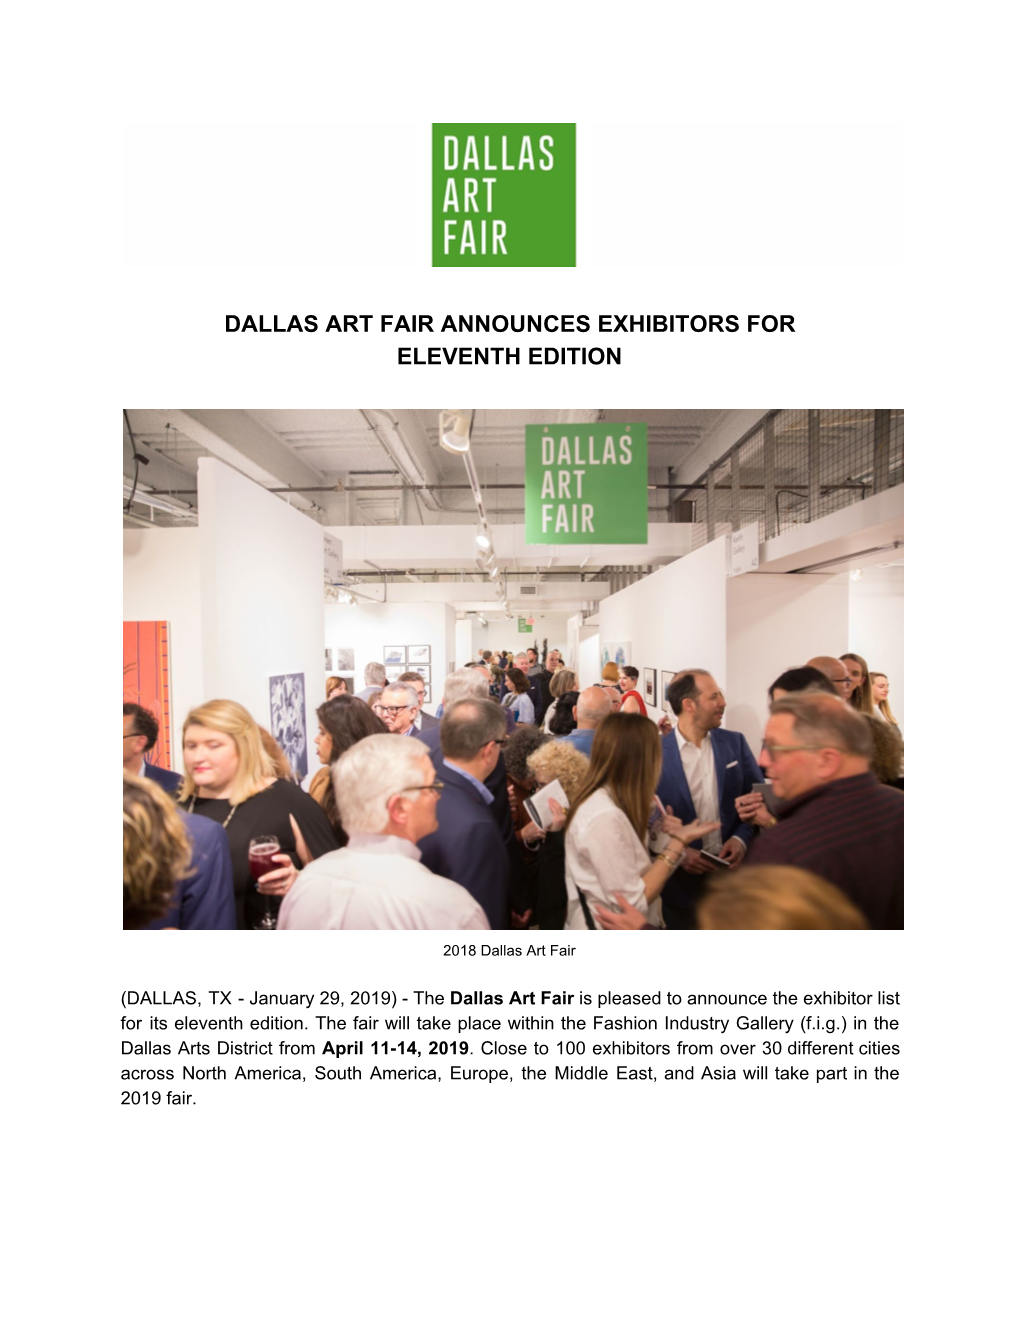 Dallas Art Fair Announces Exhibitors for Eleventh Edition